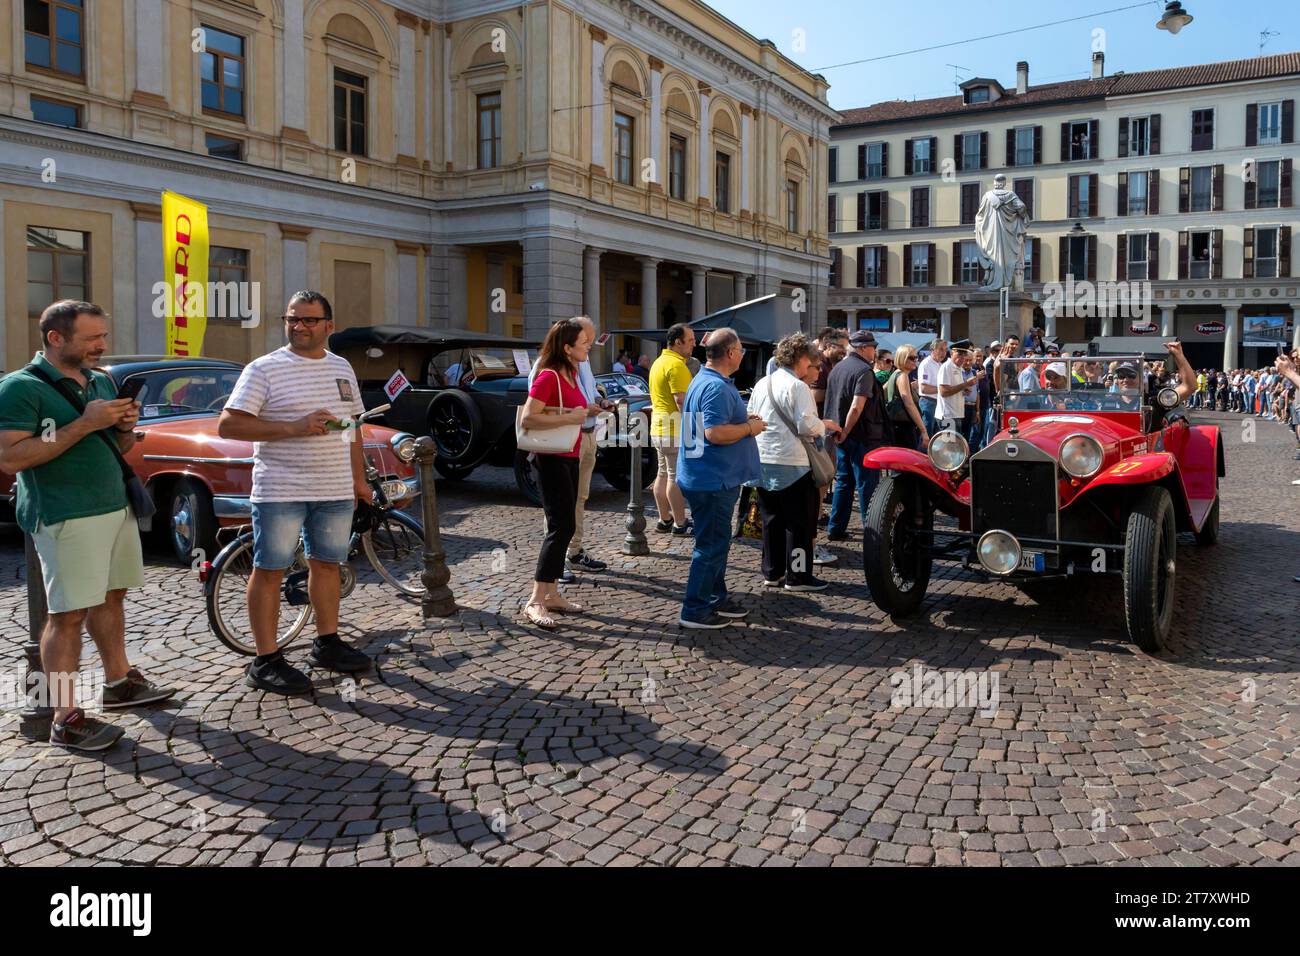 1000 Miglia, défilé de voitures historiques entre deux ailes de la foule, Novara, Piémont, Italie, Europe Banque D'Images